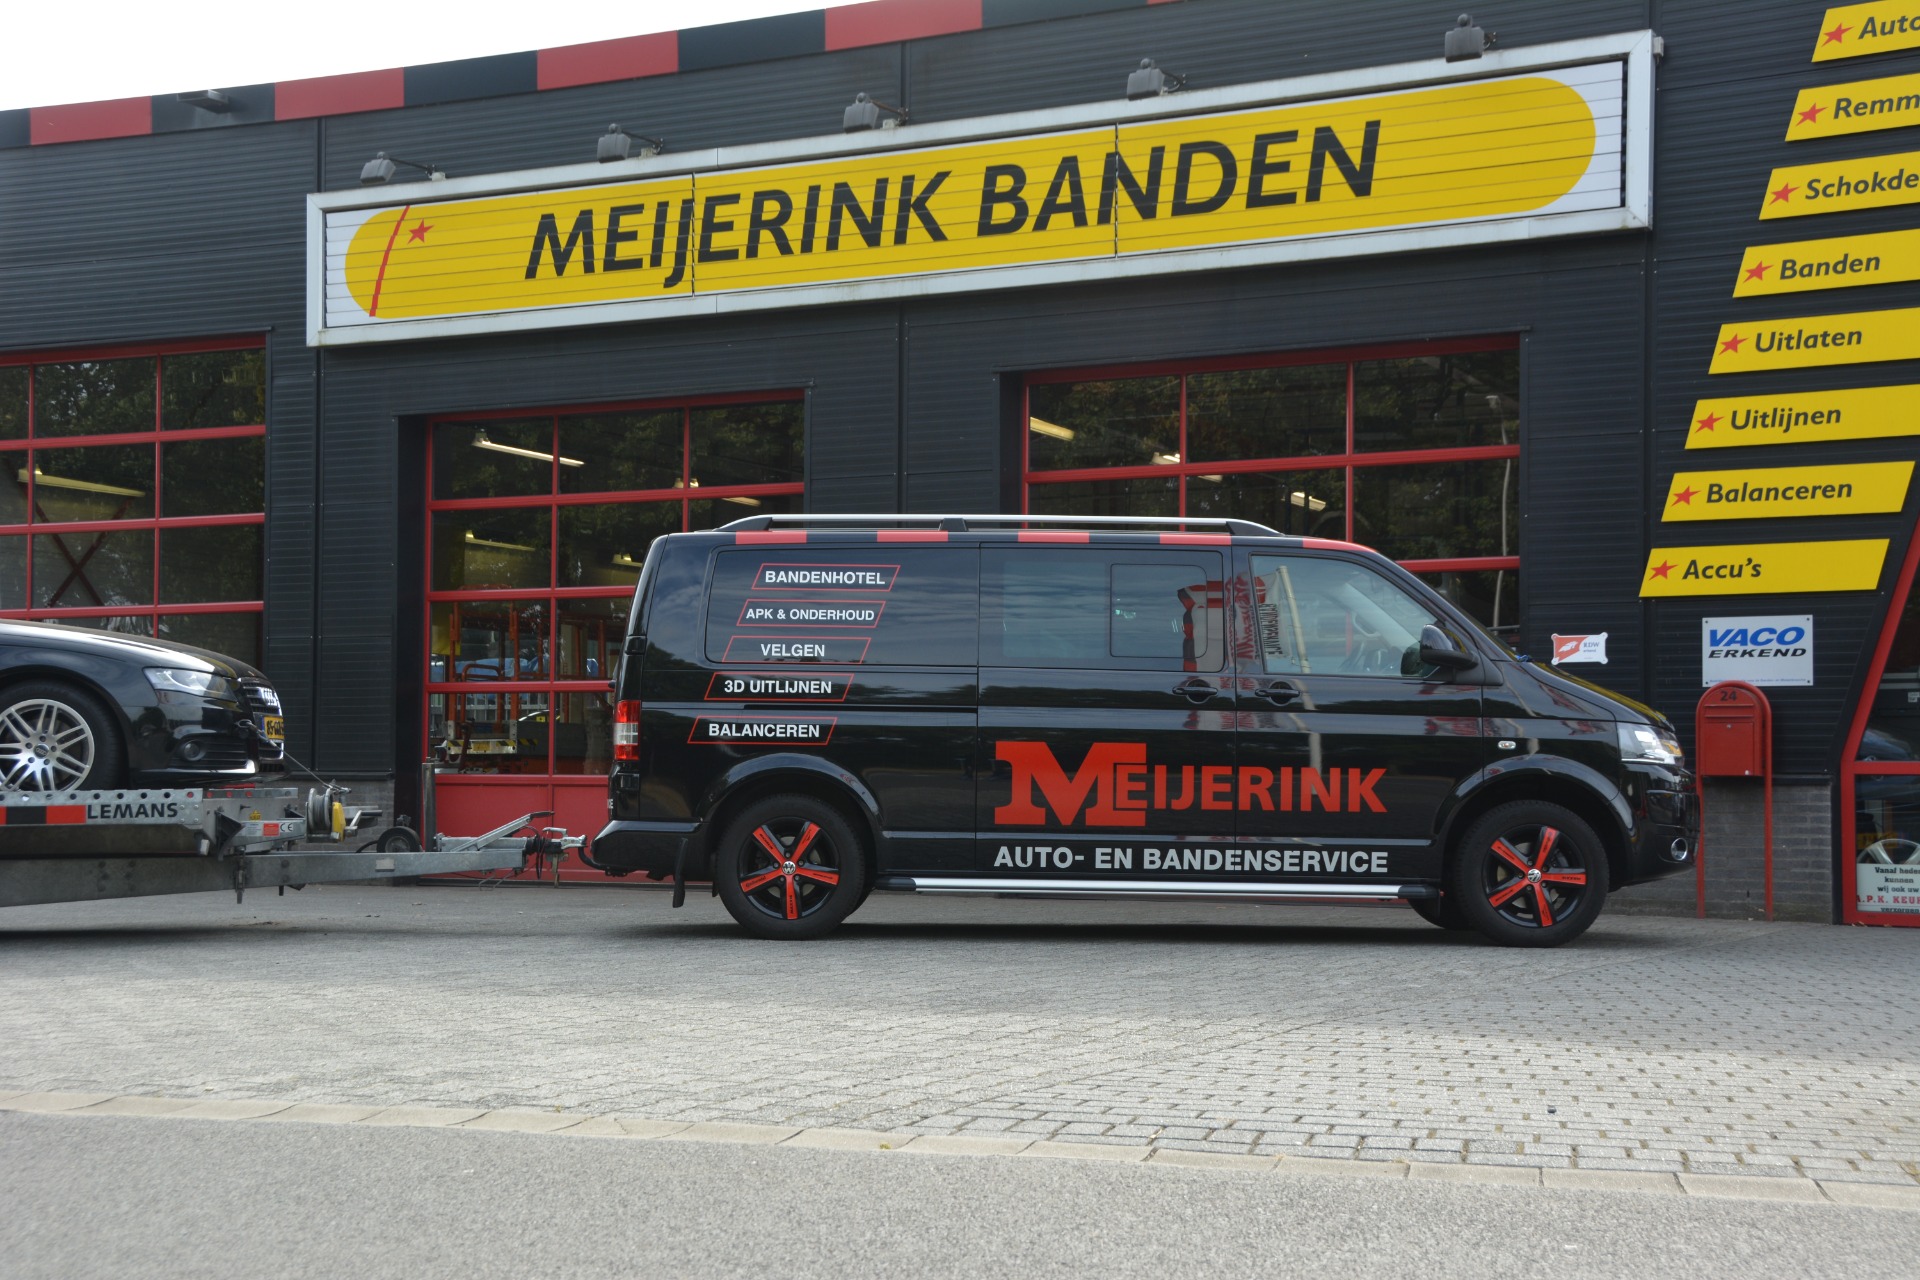 Meijerink Auto- en Bandenservice